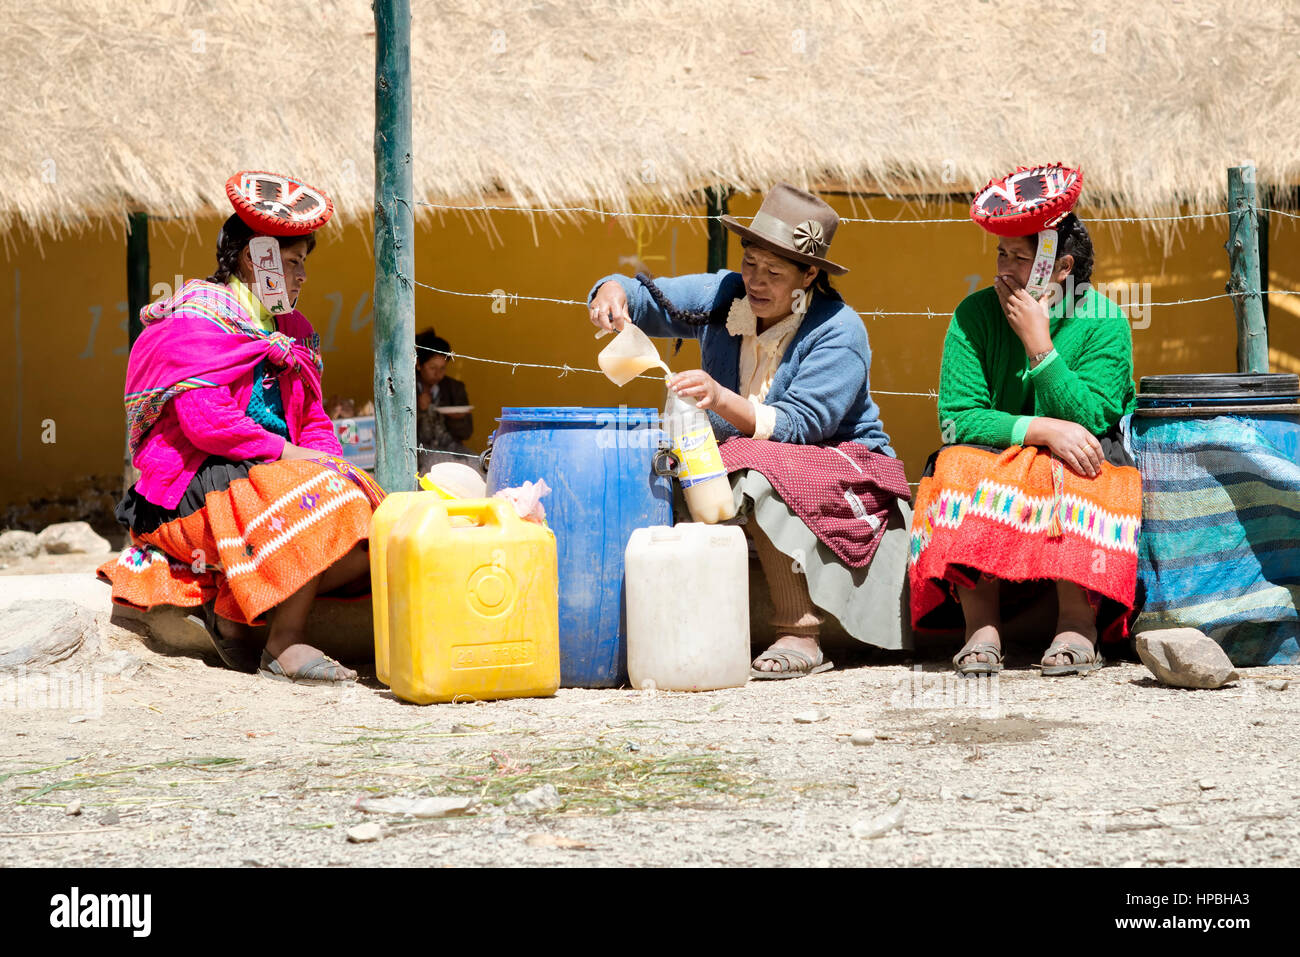 Le donne indigene vende chicha (mais fermentato birra) al mercato nella Comunità Quechua di Patacancha. Ottobre 21, 2012 - Patacancha, Ollantaytam Foto Stock